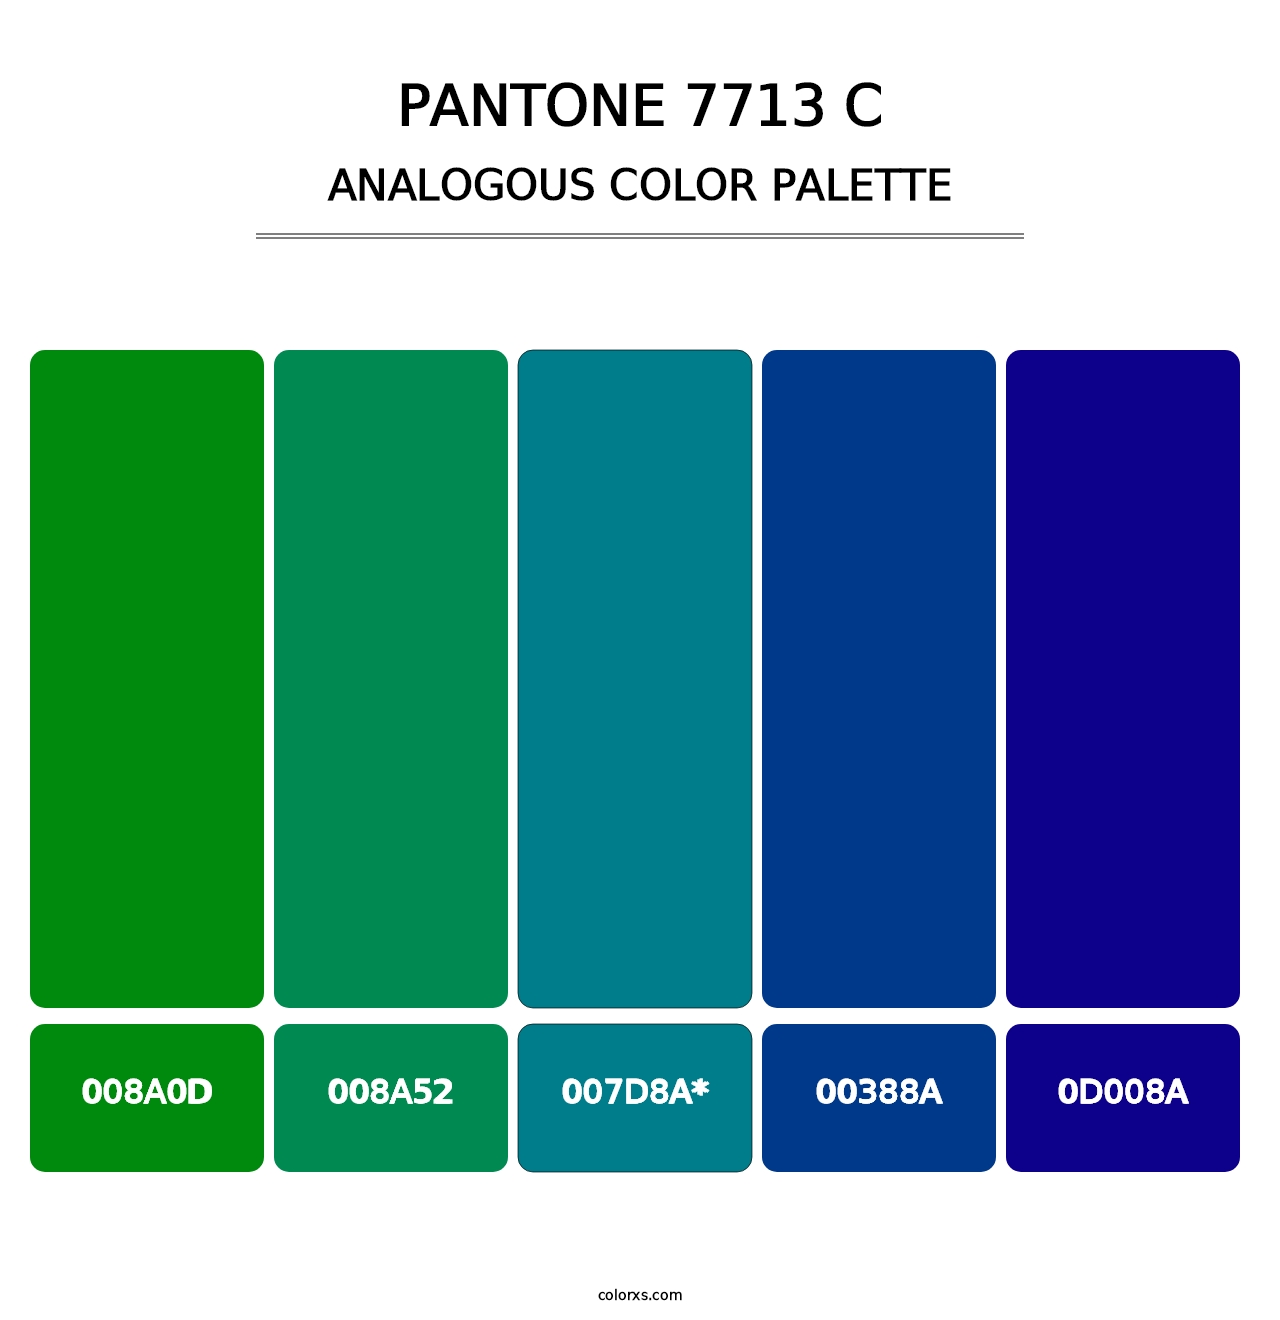 PANTONE 7713 C - Analogous Color Palette